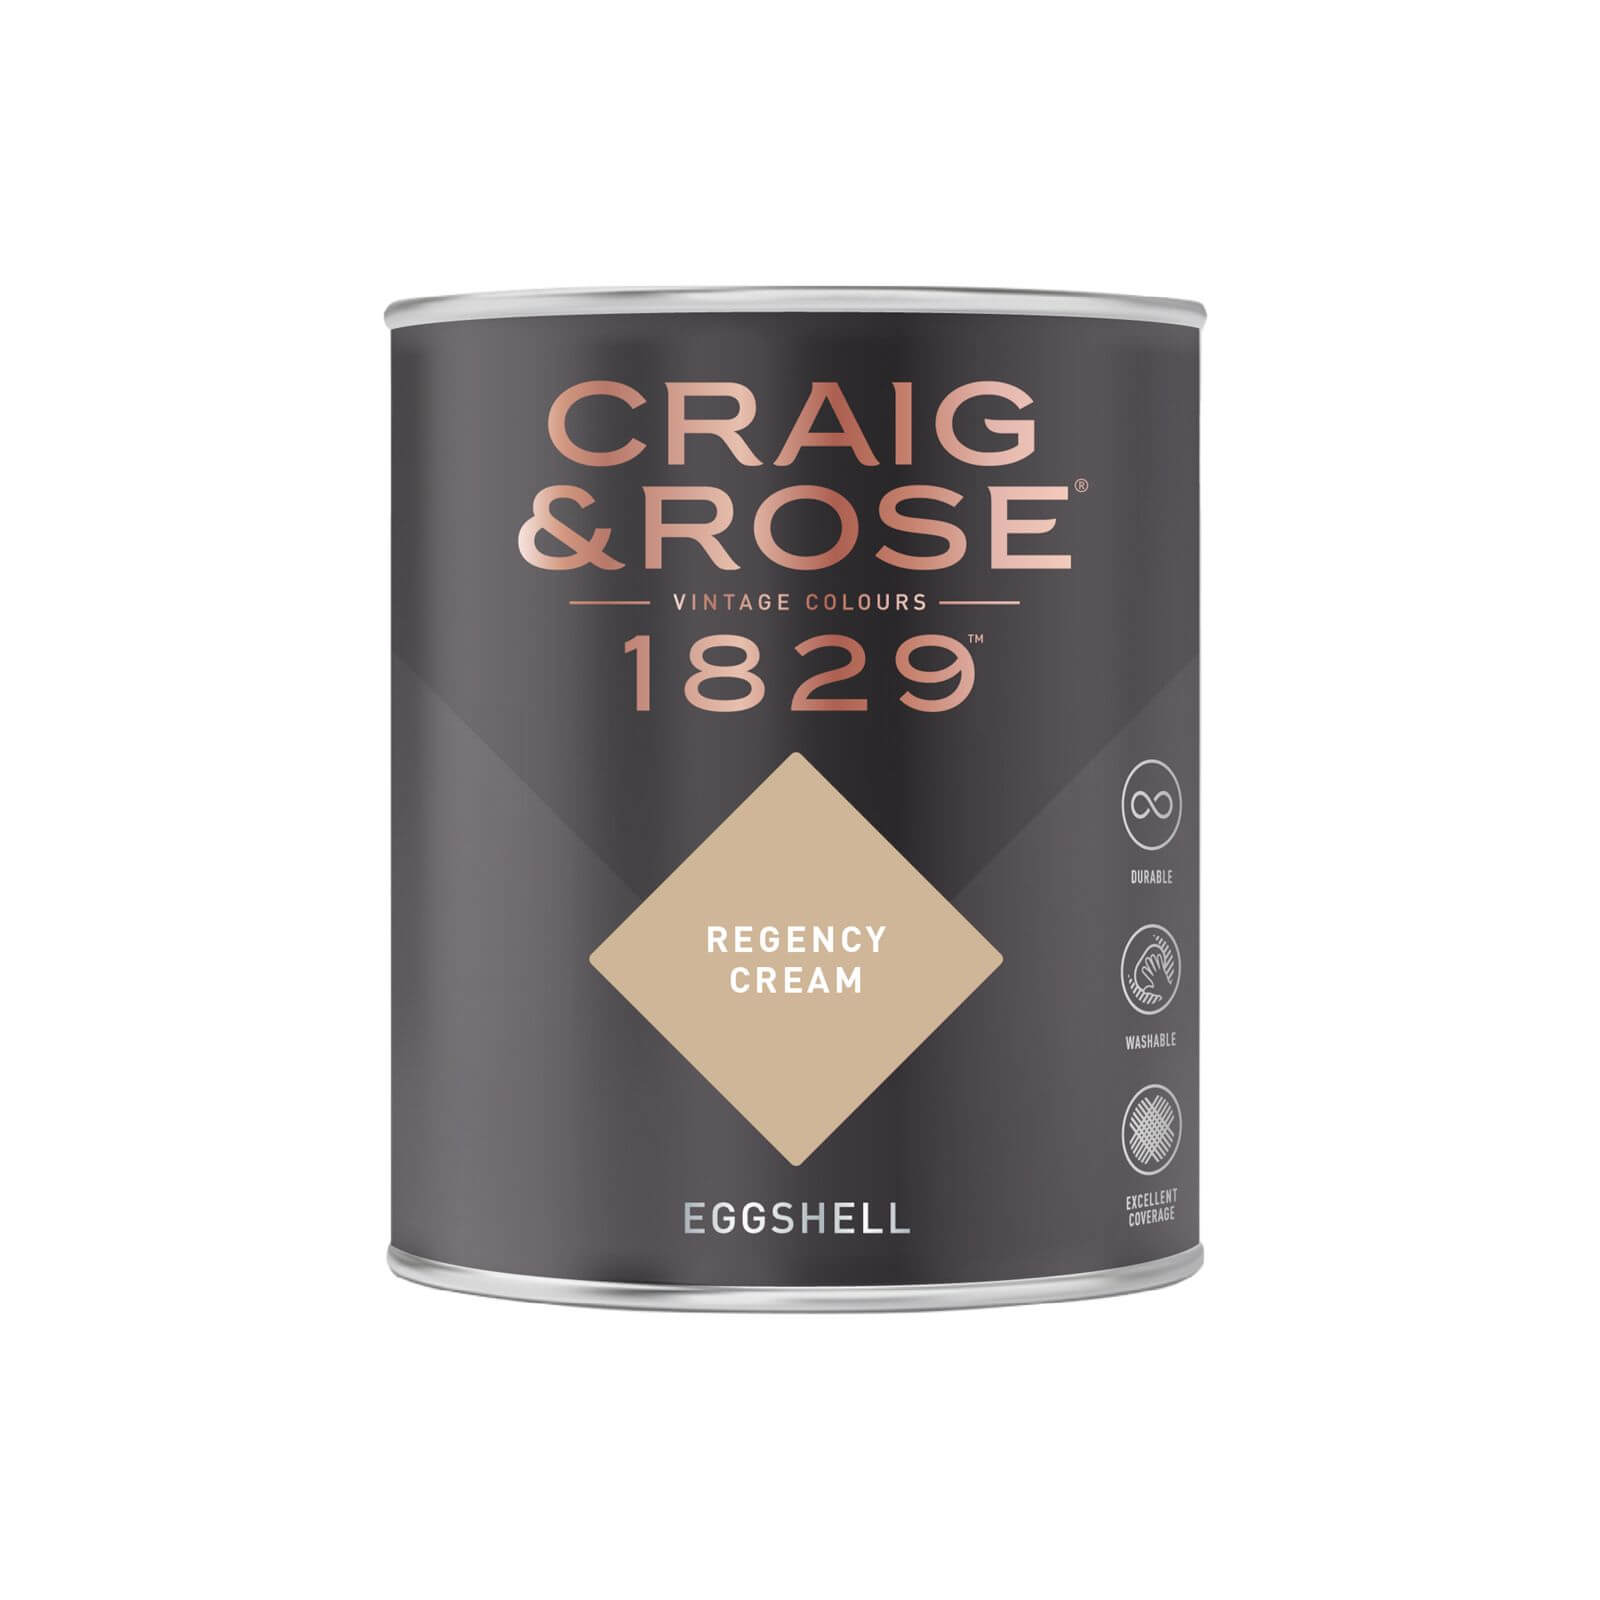 Craig & Rose 1829 Eggshell Paint Regency Cream - 750ml